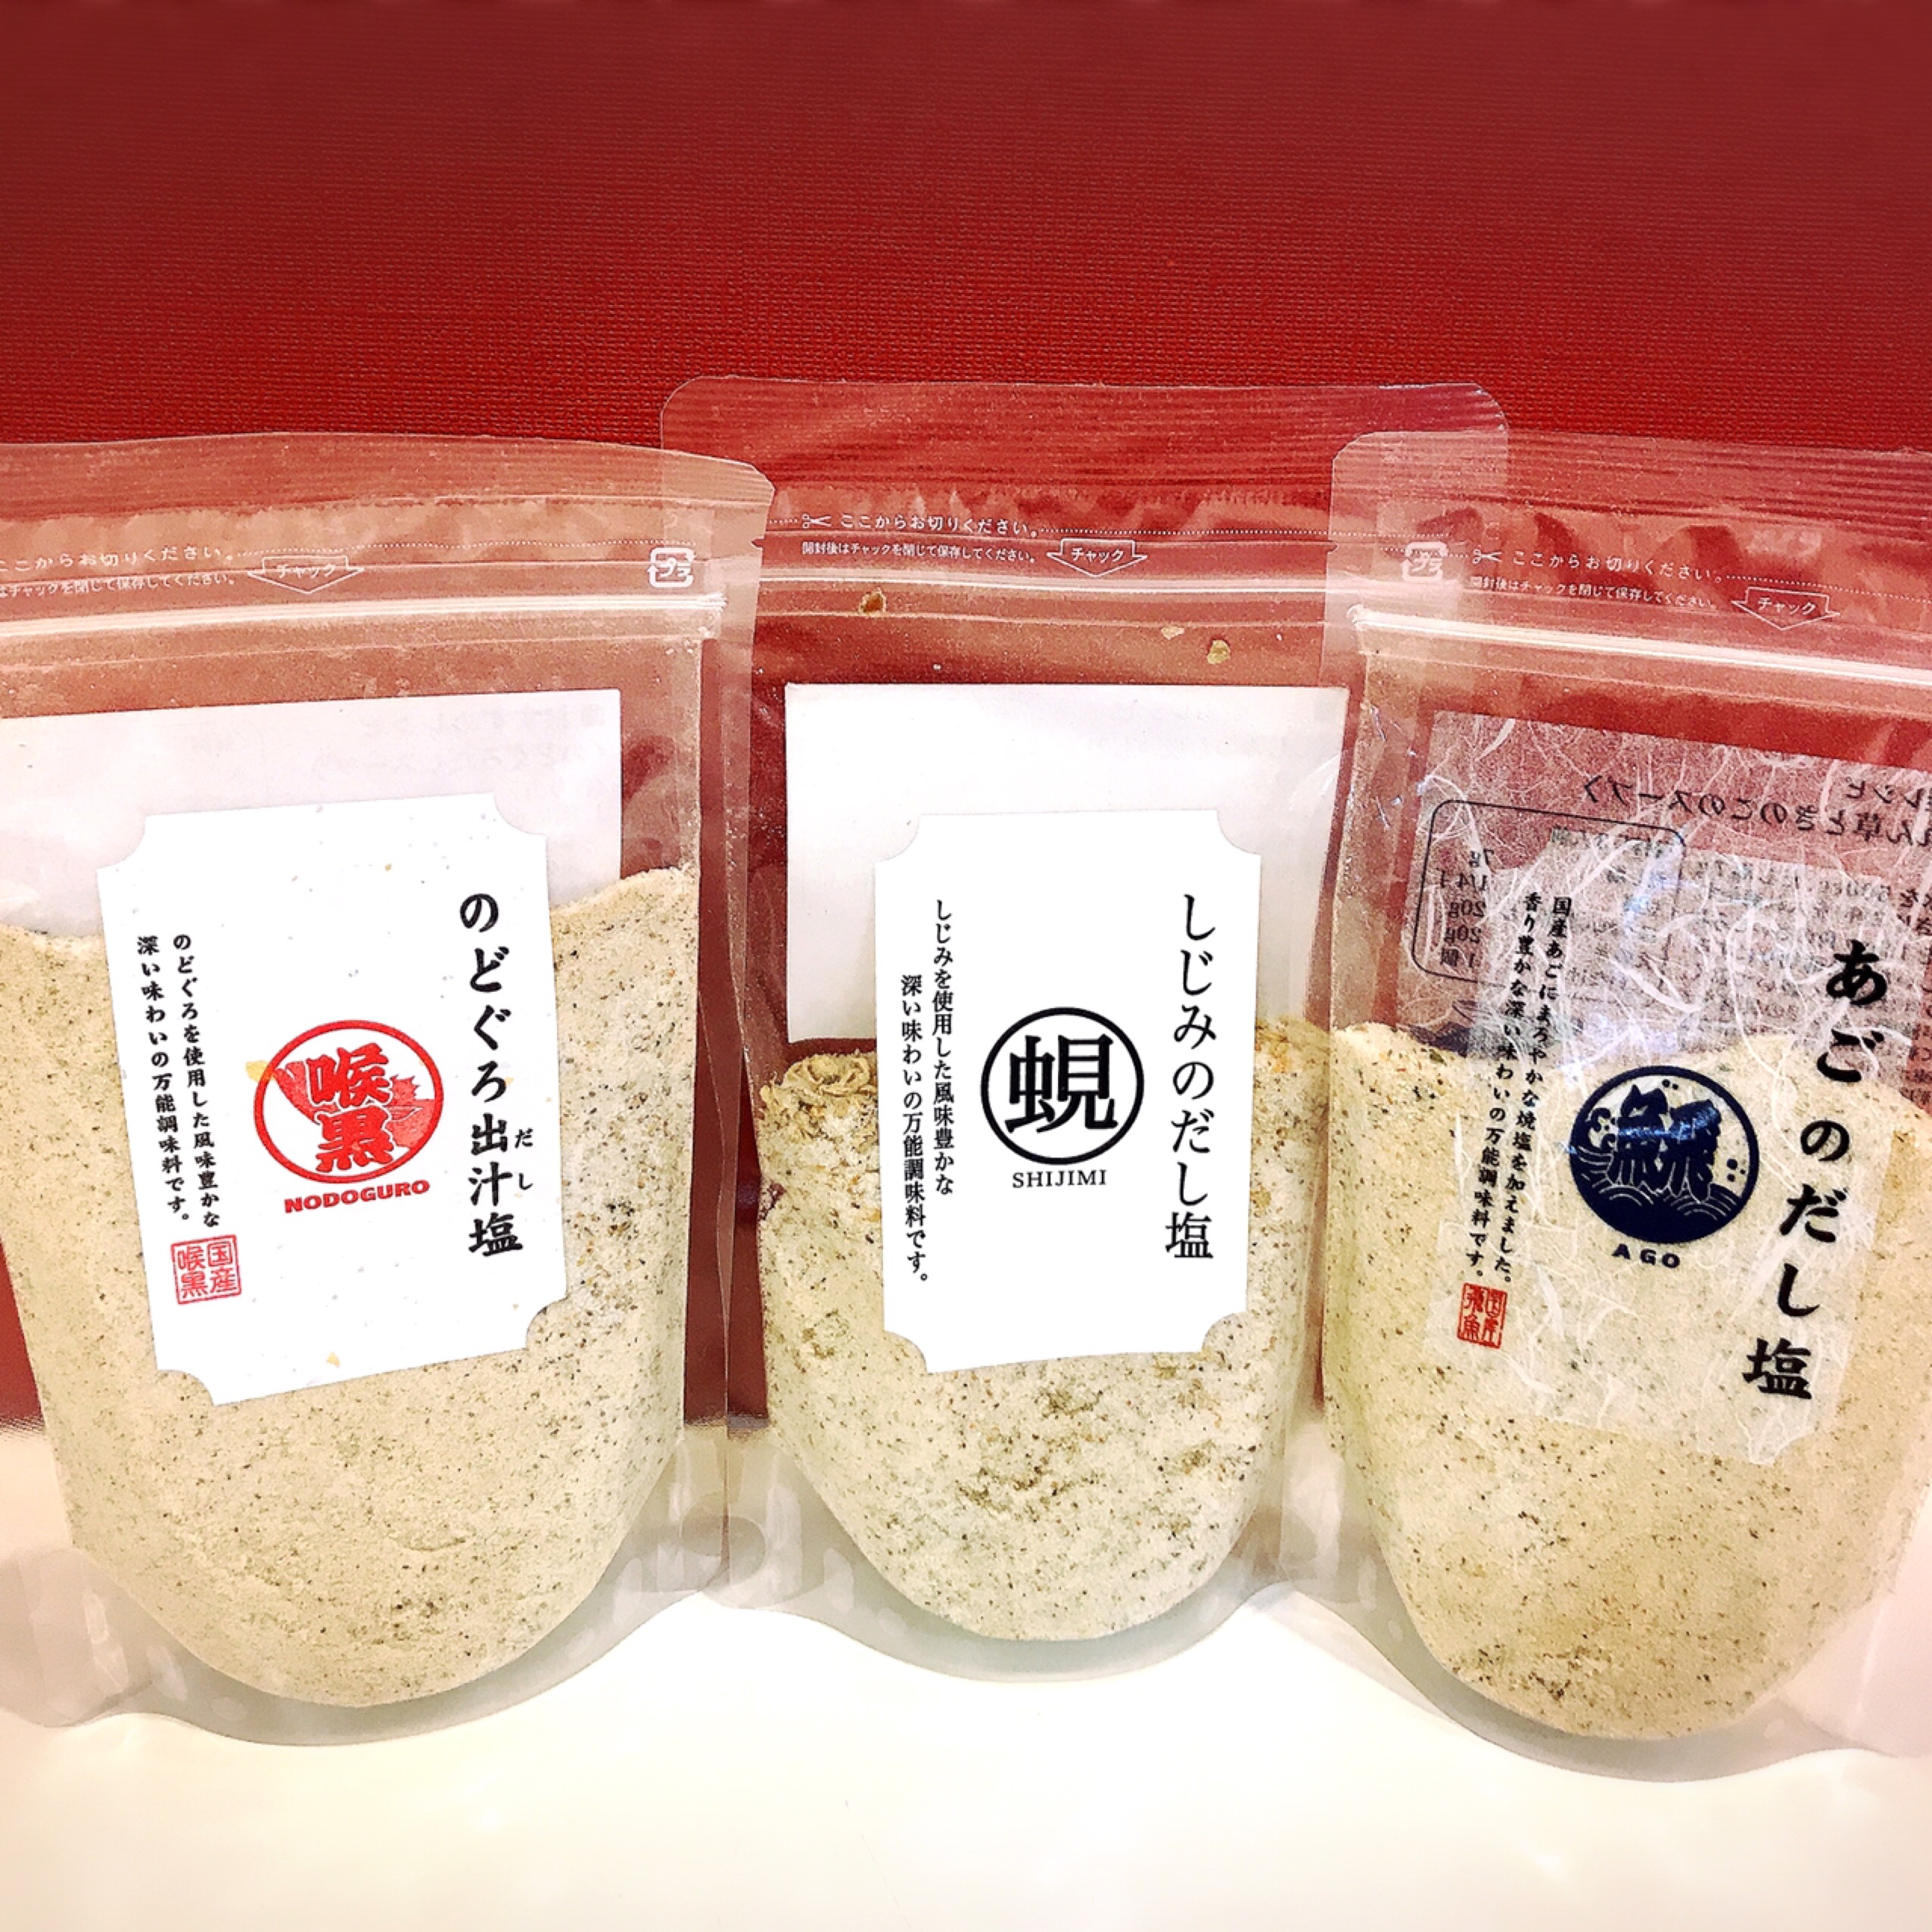 万能塩が登場！ | BEEWING SAN-IN SELECT SOUVENIR SHOP | 鳥取・島根のお土産物のお取り寄せ。